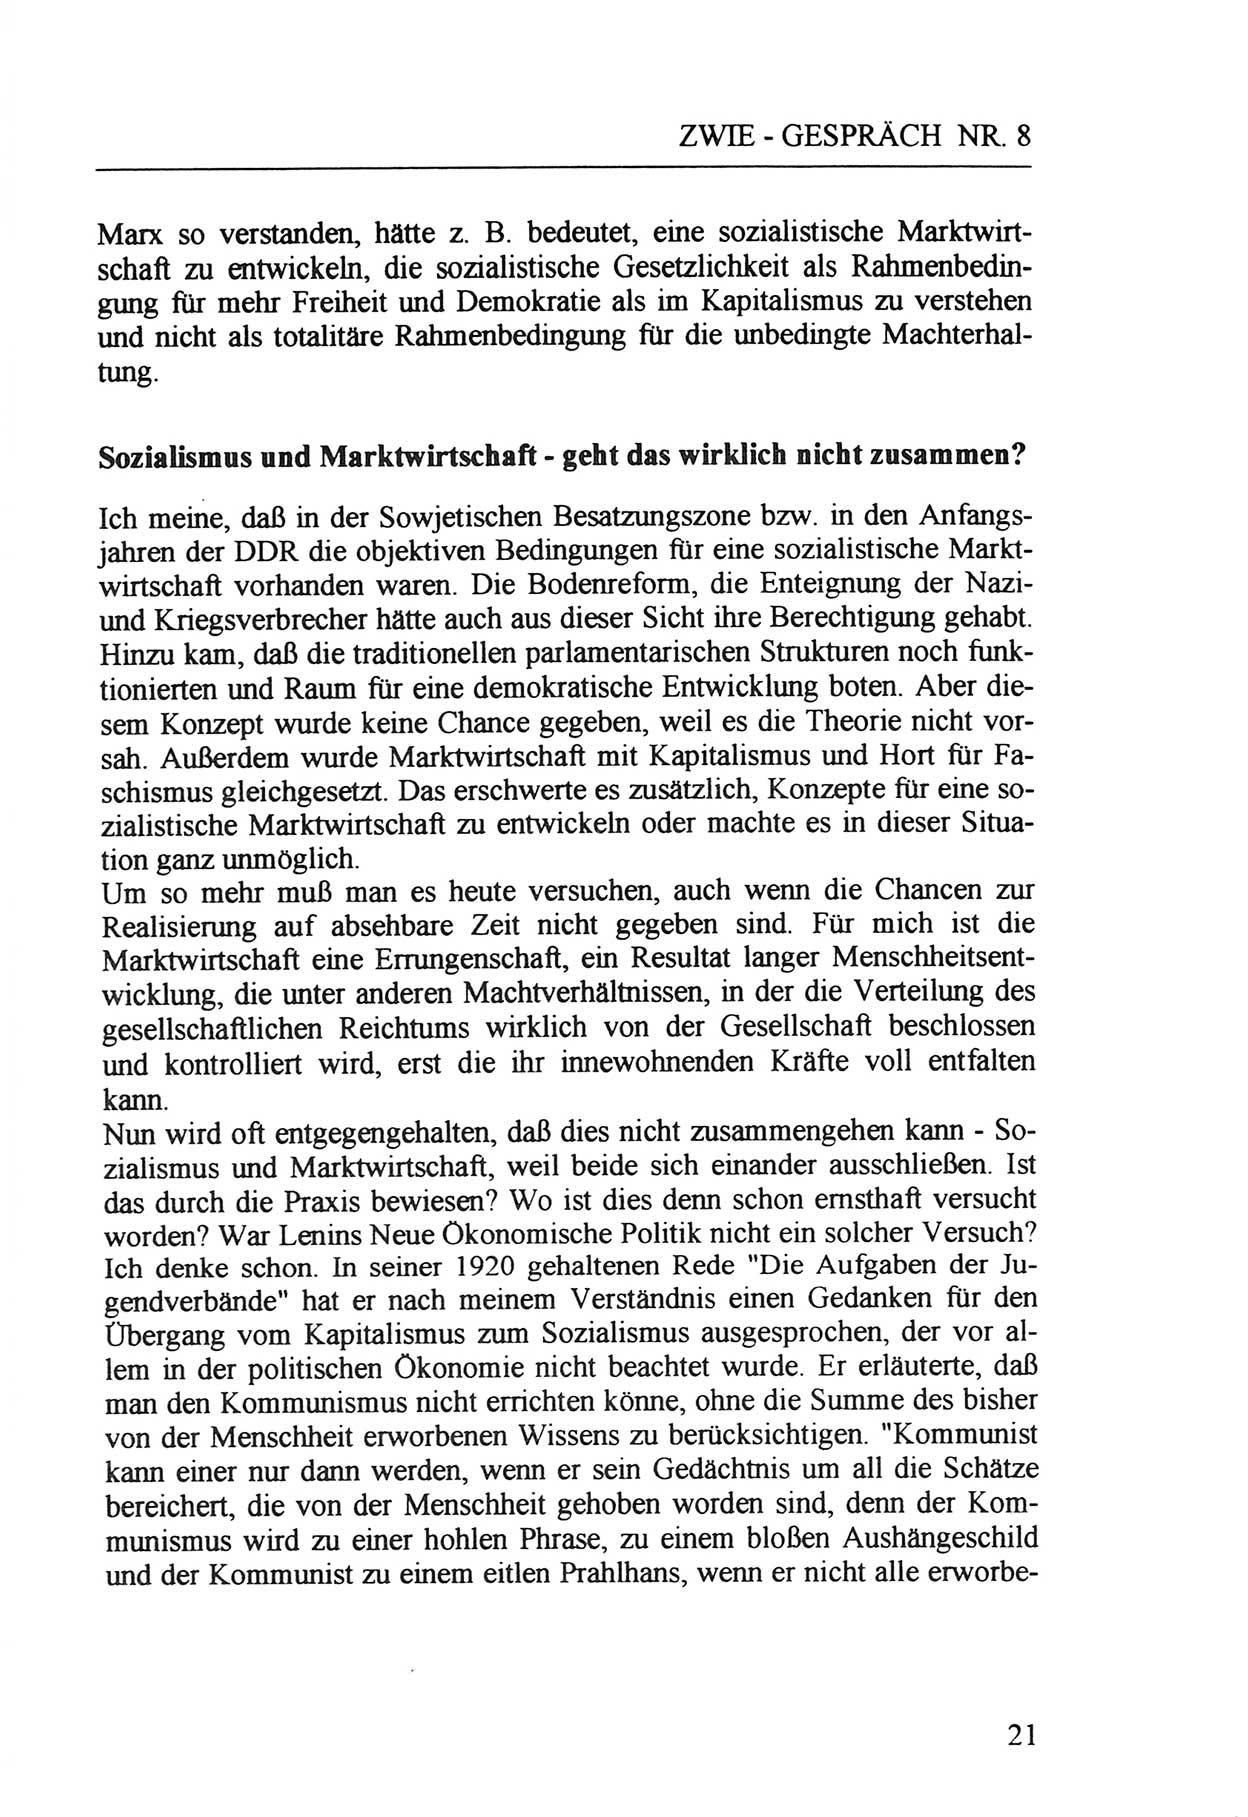 Zwie-Gespräch, Beiträge zur Aufarbeitung der Staatssicherheits-Vergangenheit [Deutsche Demokratische Republik (DDR)], Ausgabe Nr. 8, Berlin 1992, Seite 21 (Zwie-Gespr. Ausg. 8 1992, S. 21)